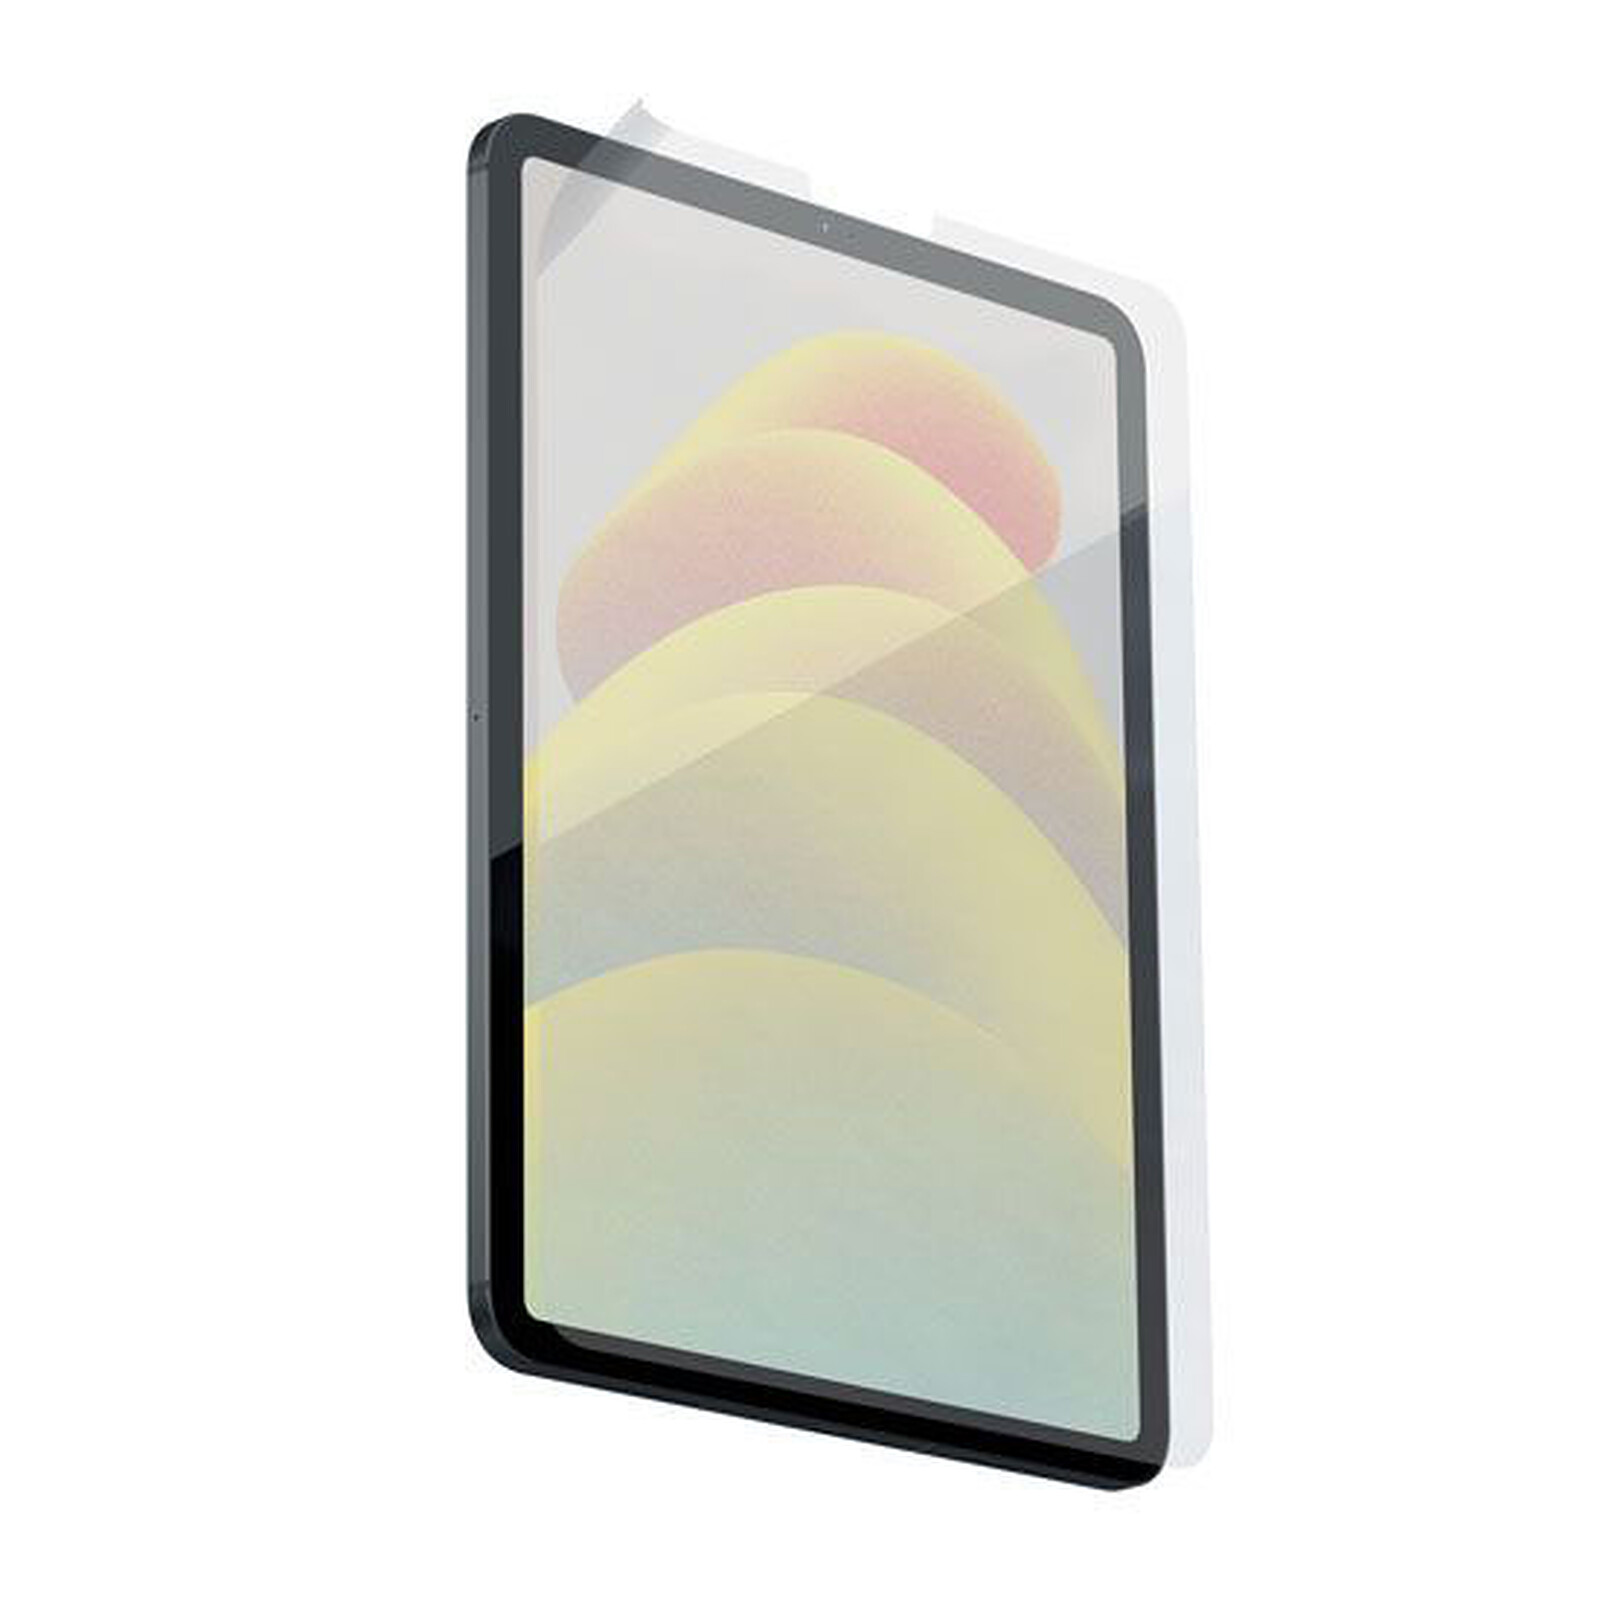 Paperlike 2.1 iPad 10.2